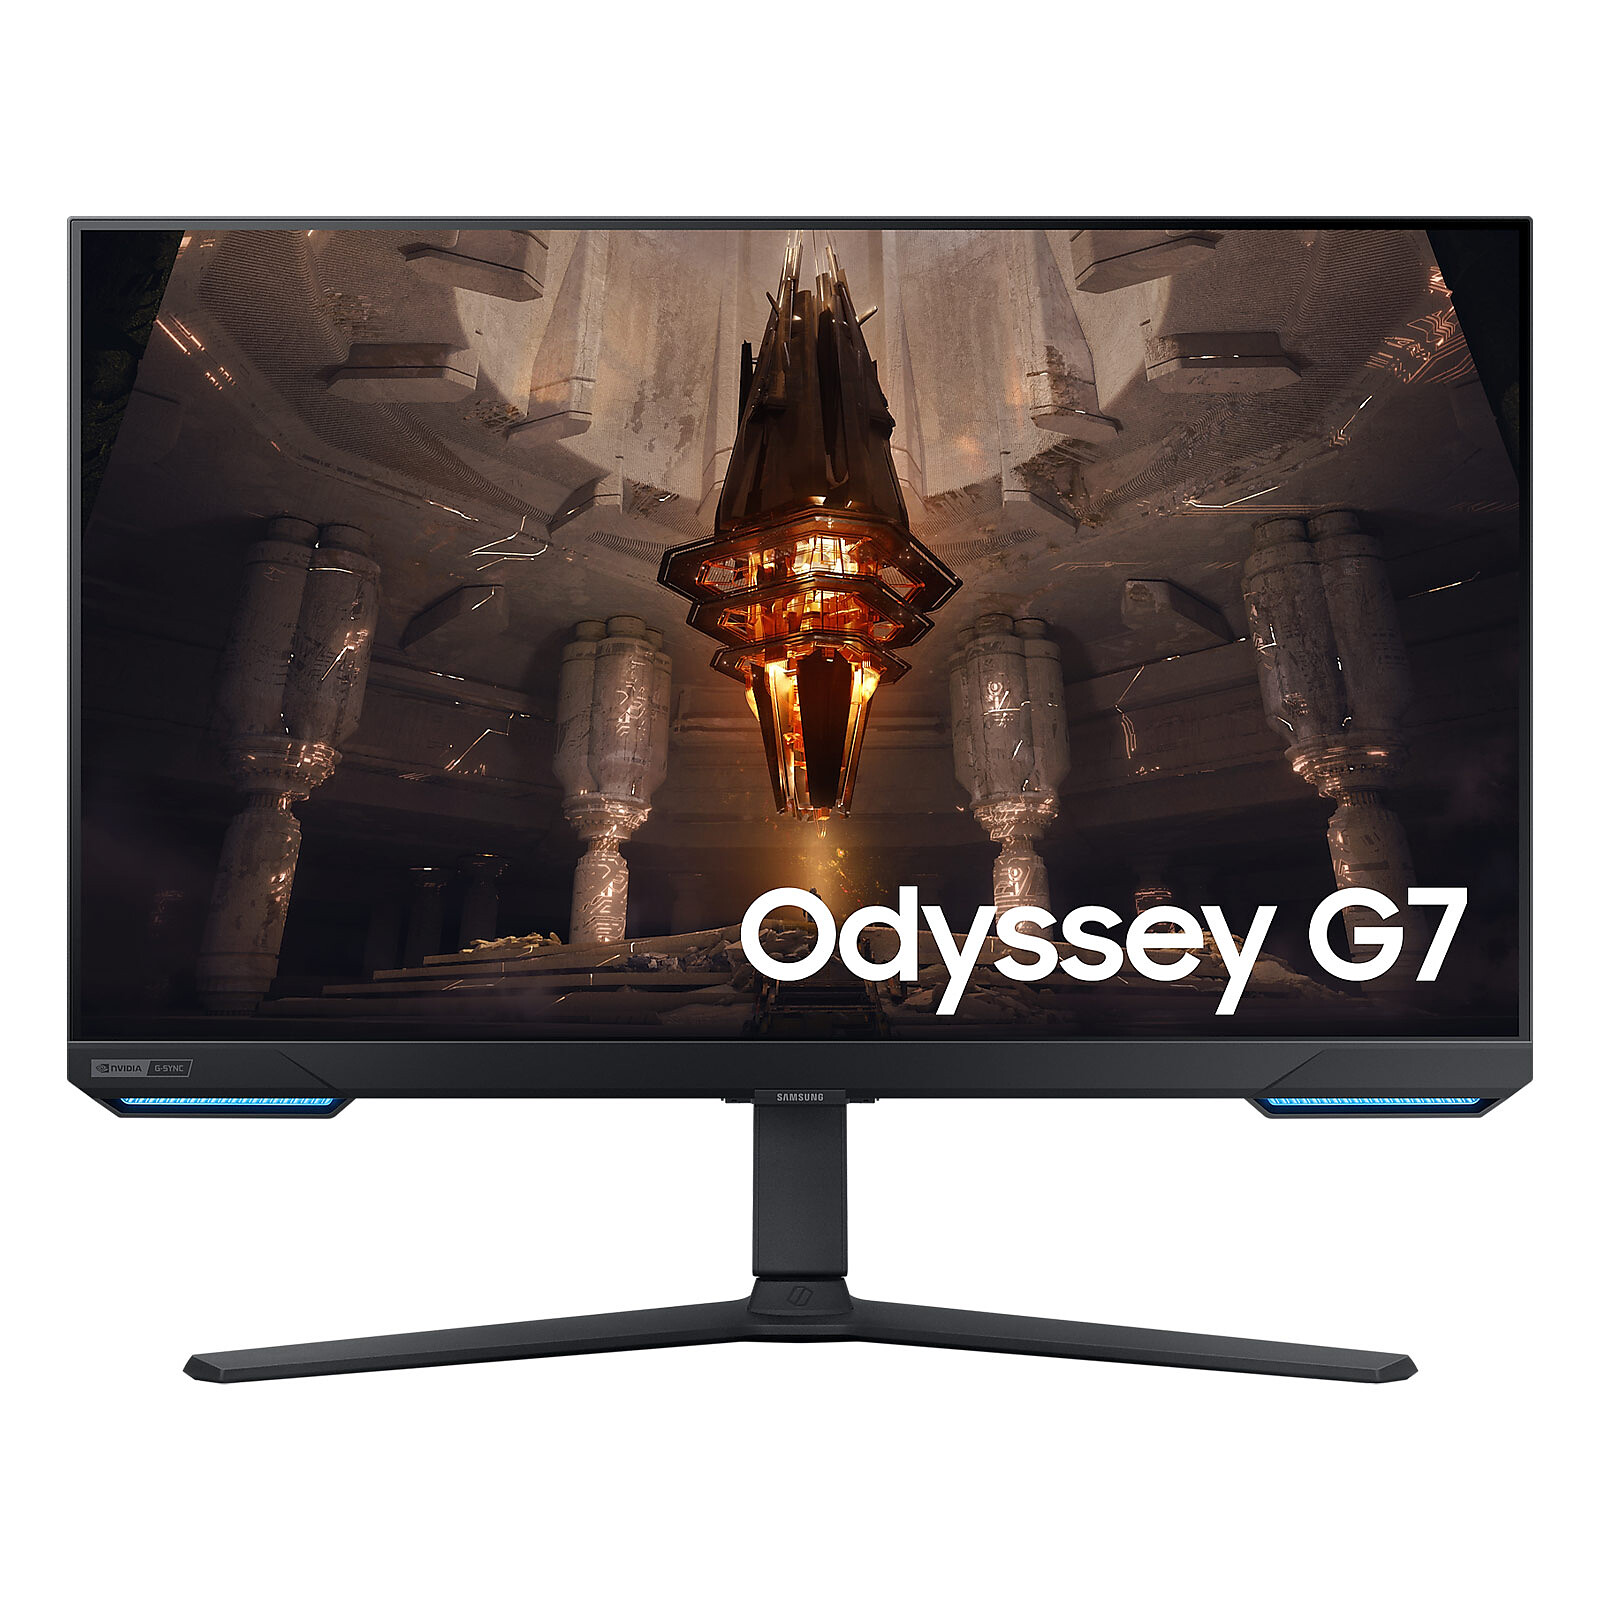 Achetez vos écrans Samsung Odyssey G5 au kilo, ça coûte moins cher ! 